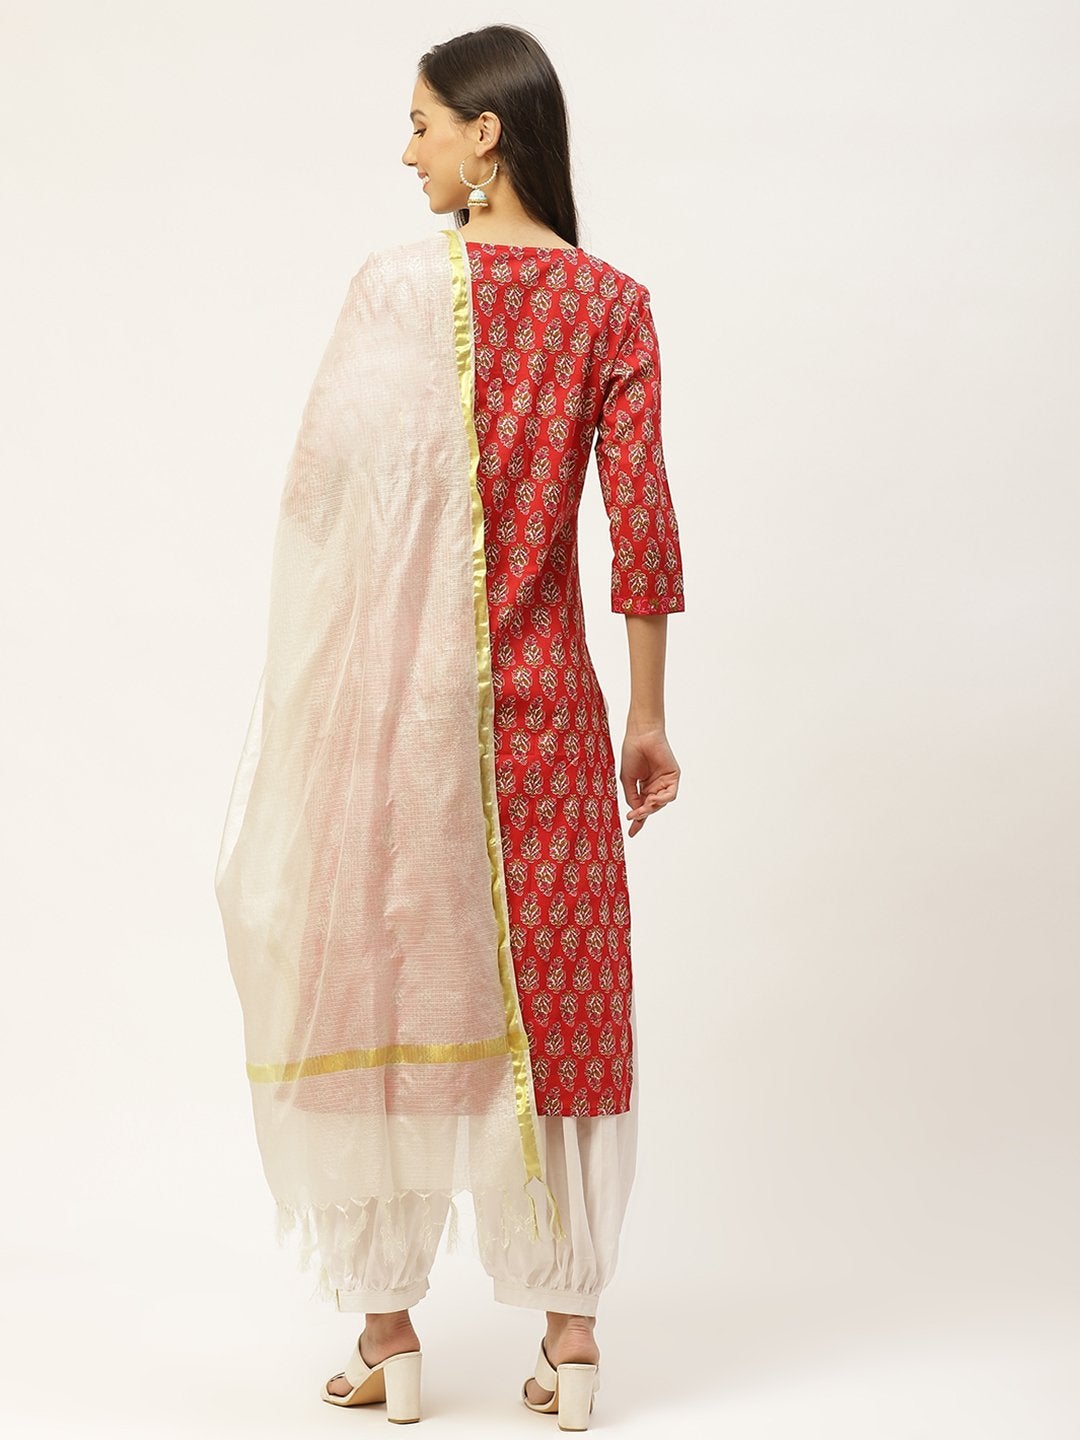 Women's Red & White Ethnic Hand Printed Cotton Kurta with Salwar & Dupatta - Maaesa